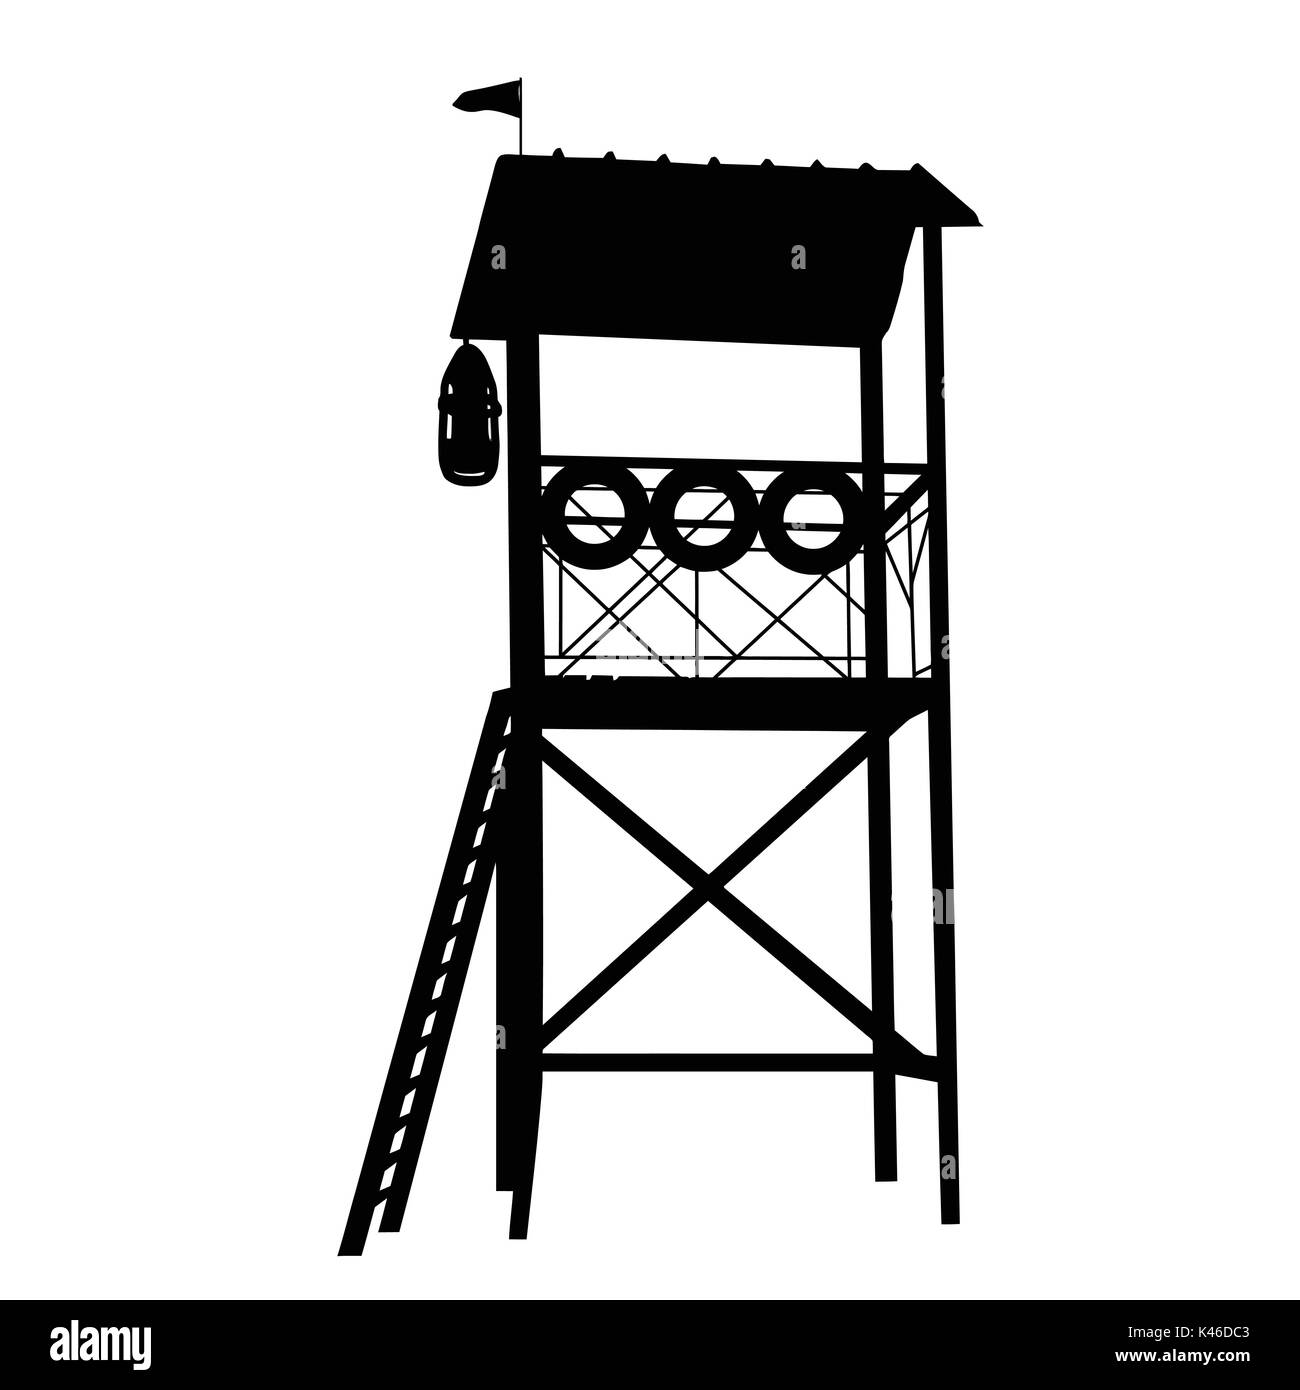 Holz- Lifeguard tower Silhouette auf weißem Hintergrund, Vector Illustration Stock Vektor